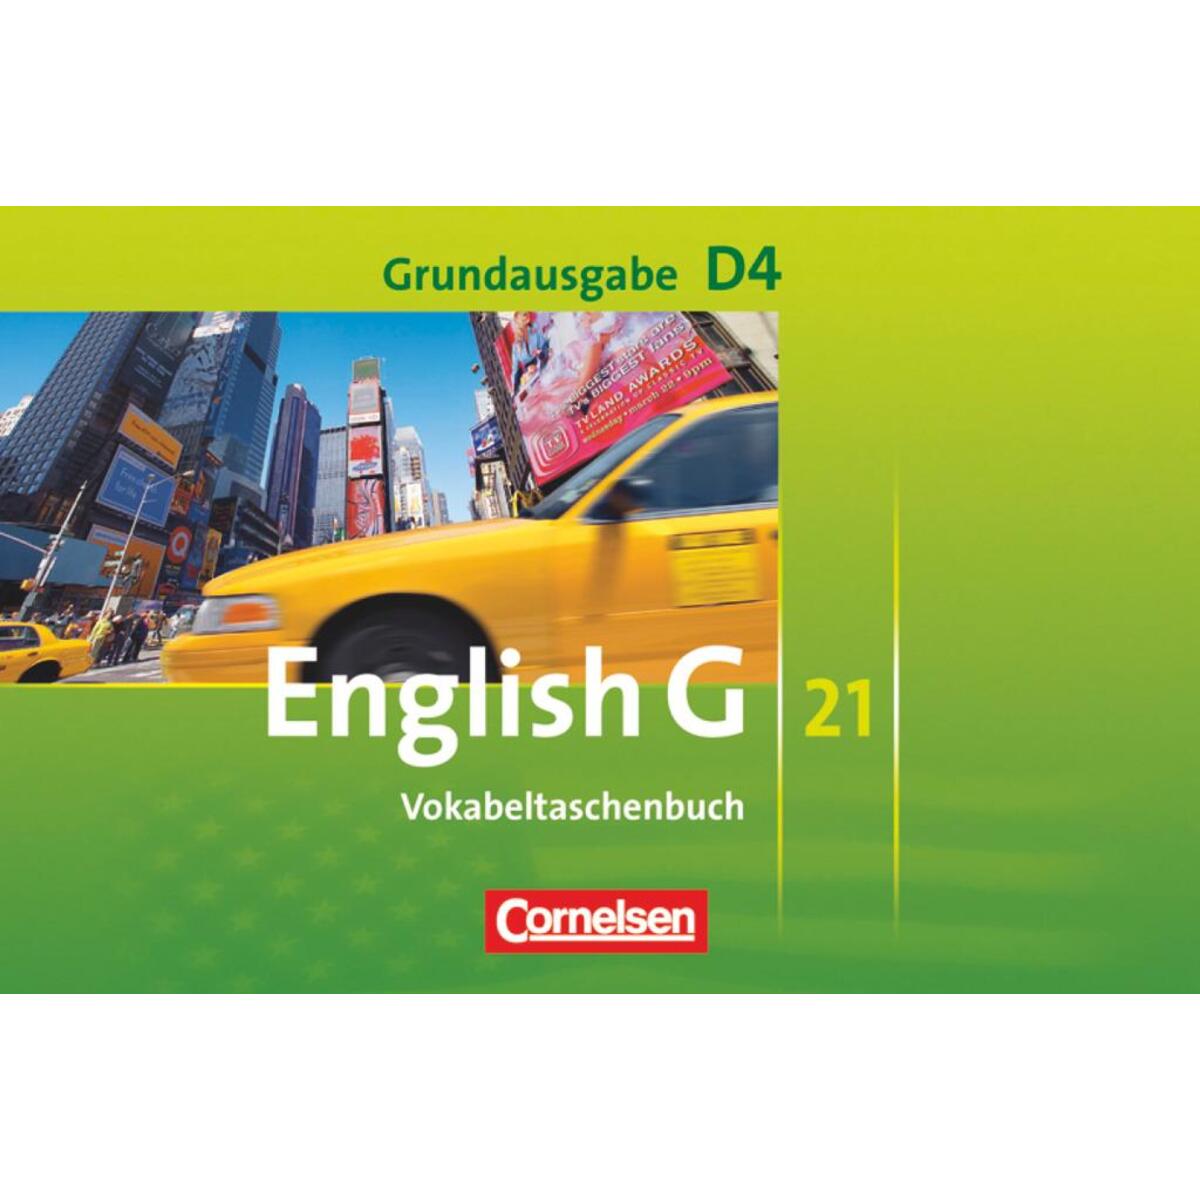 English G 21. Grundausgabe D 4. Vokabeltaschenbuch von Cornelsen Verlag GmbH